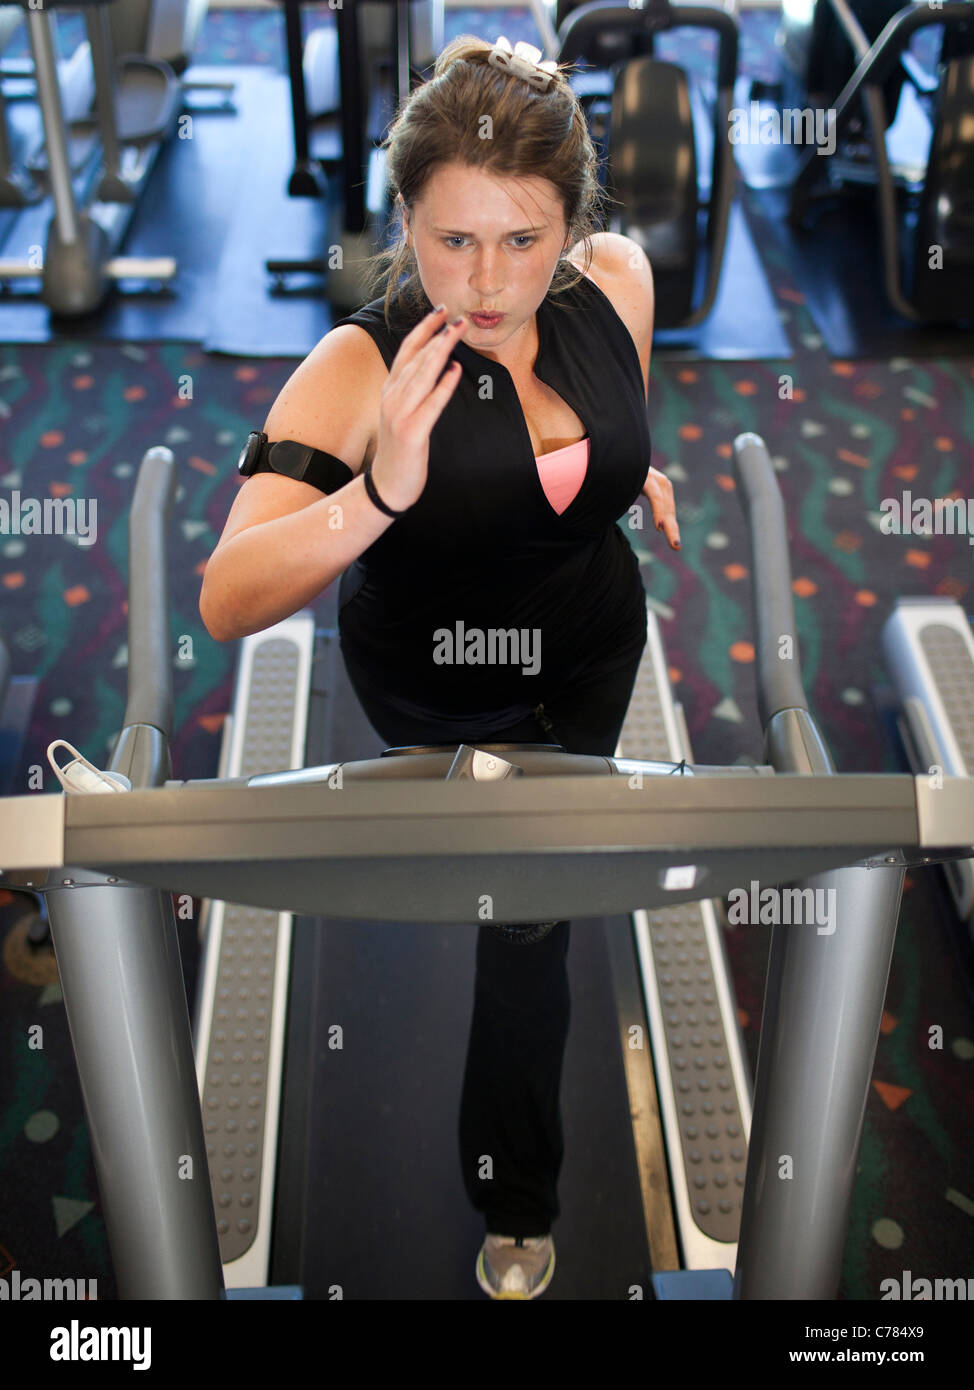 USA, Utah, Draper, Frau Training auf Laufband Stockfoto